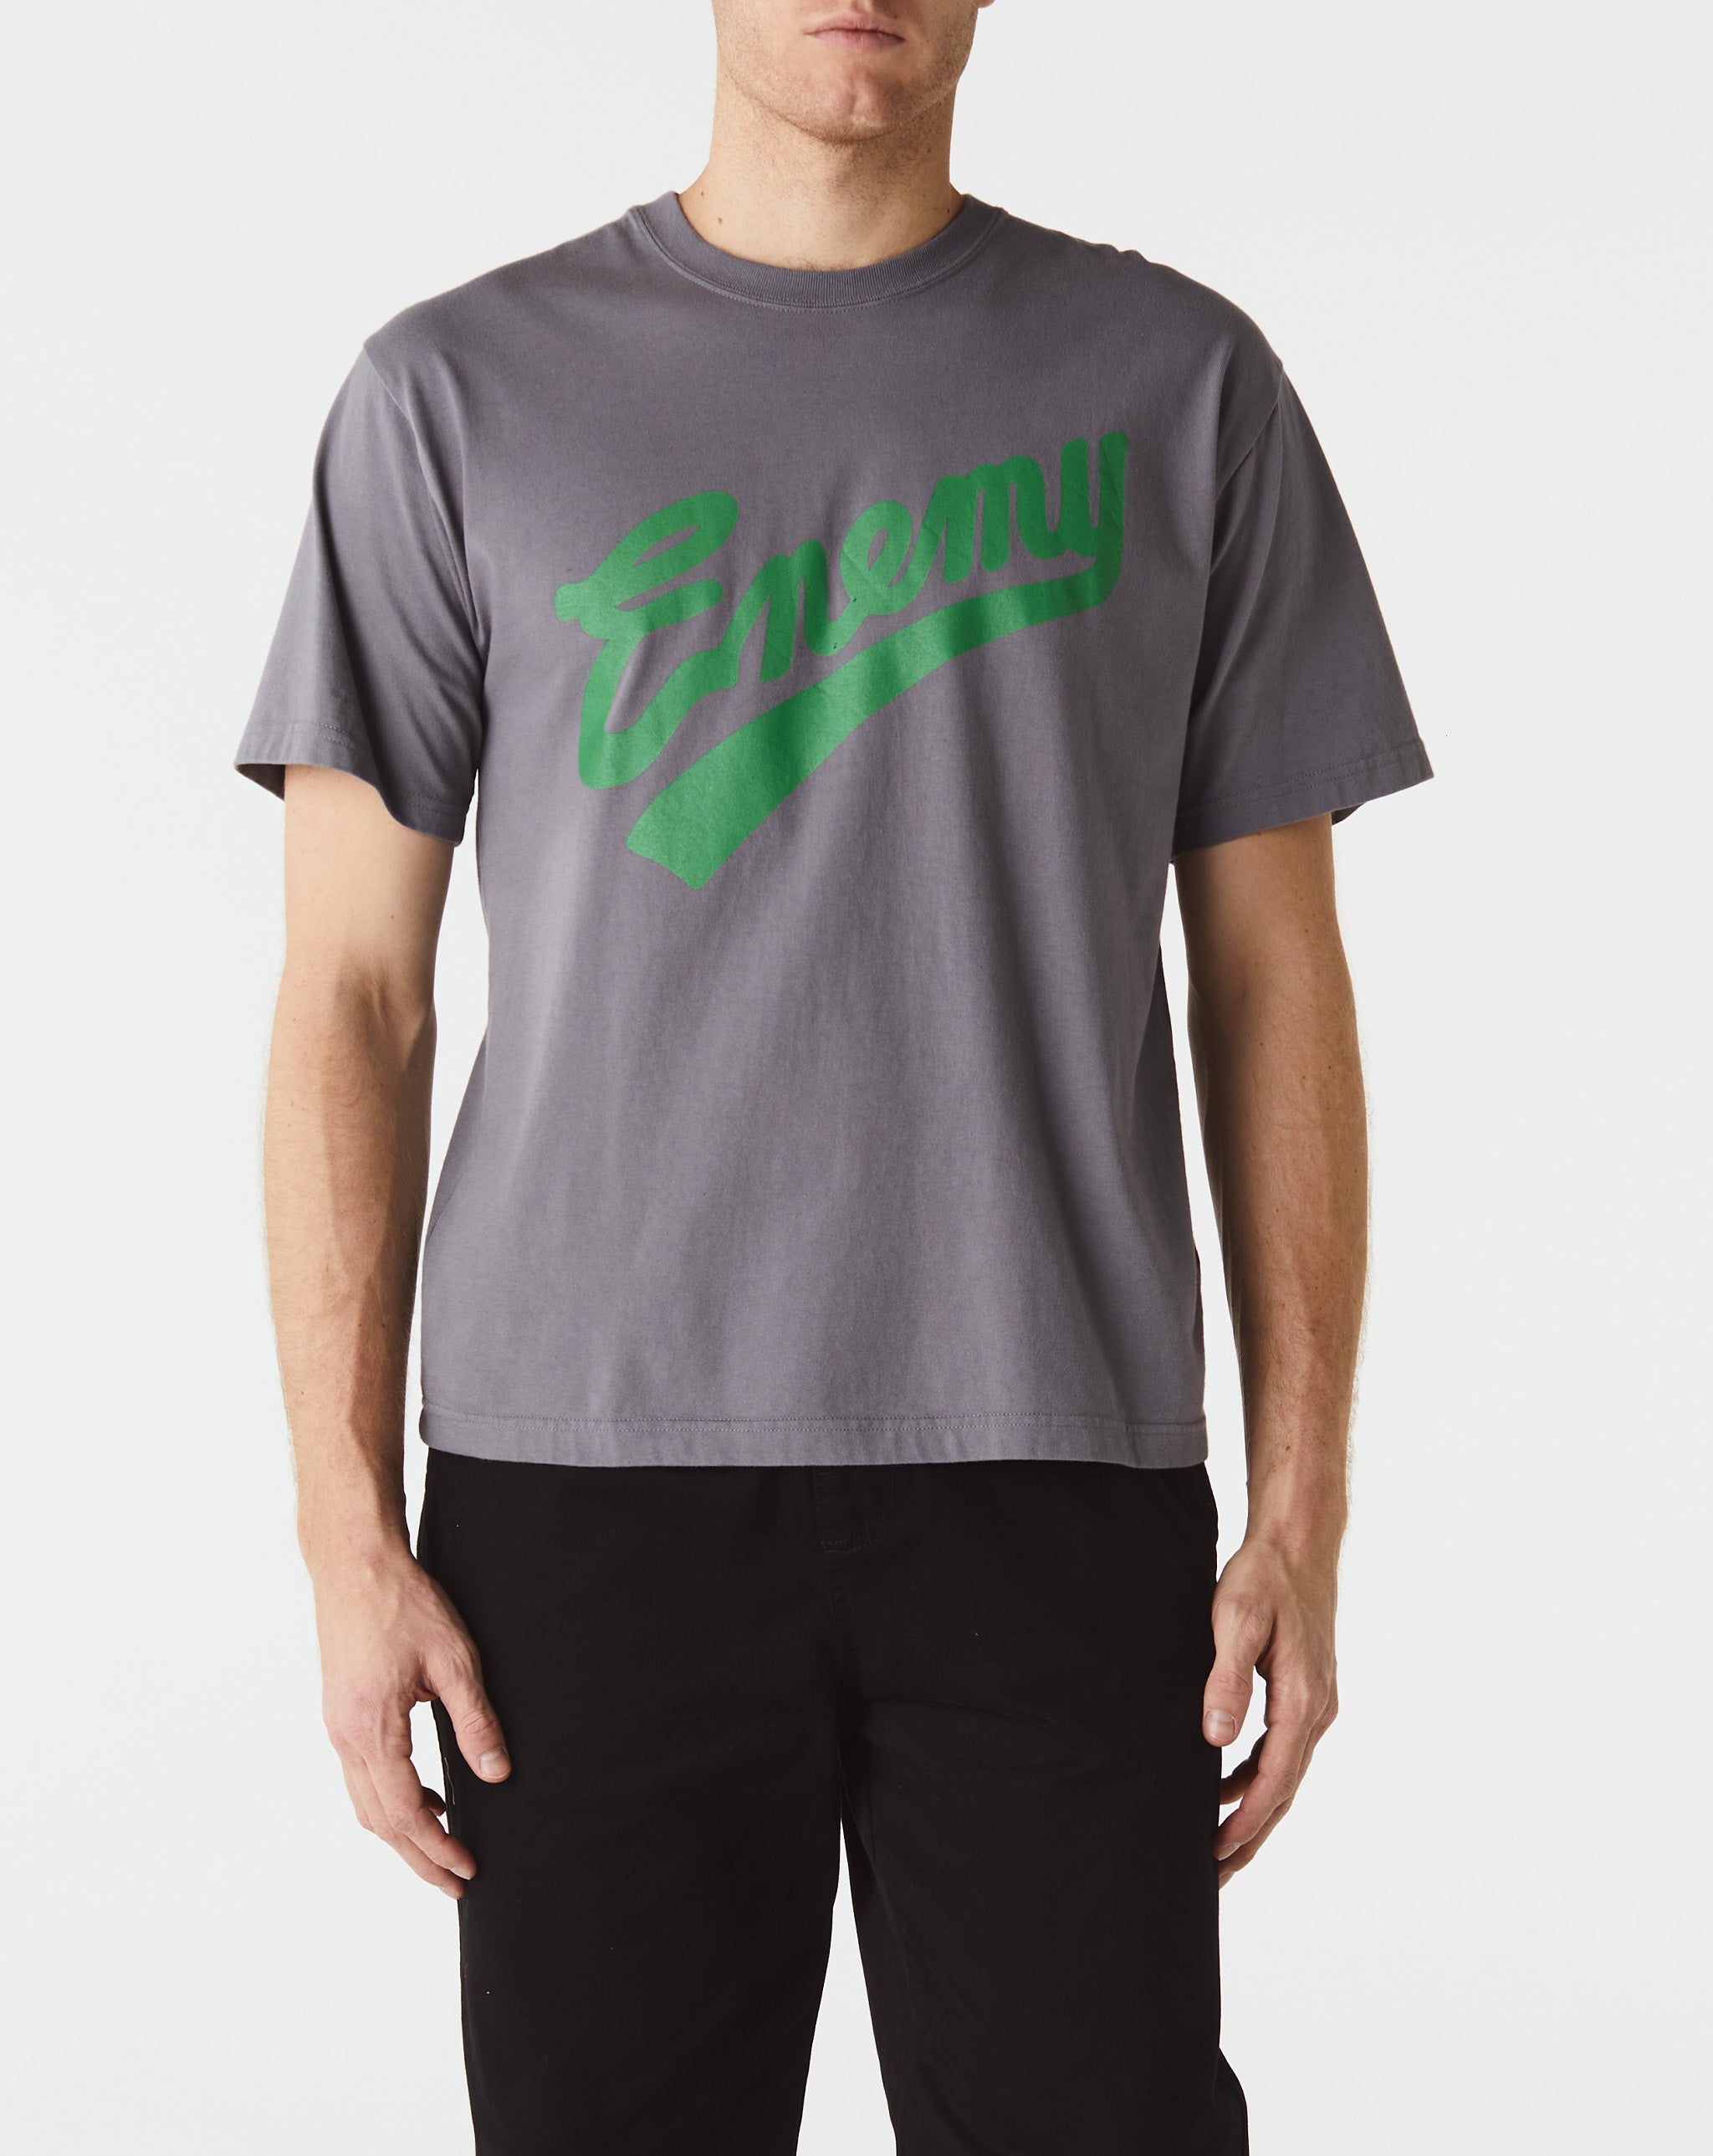 Neighborhood Classic T-Shirt 2-Pack  - Cheap Urlfreeze Jordan outlet